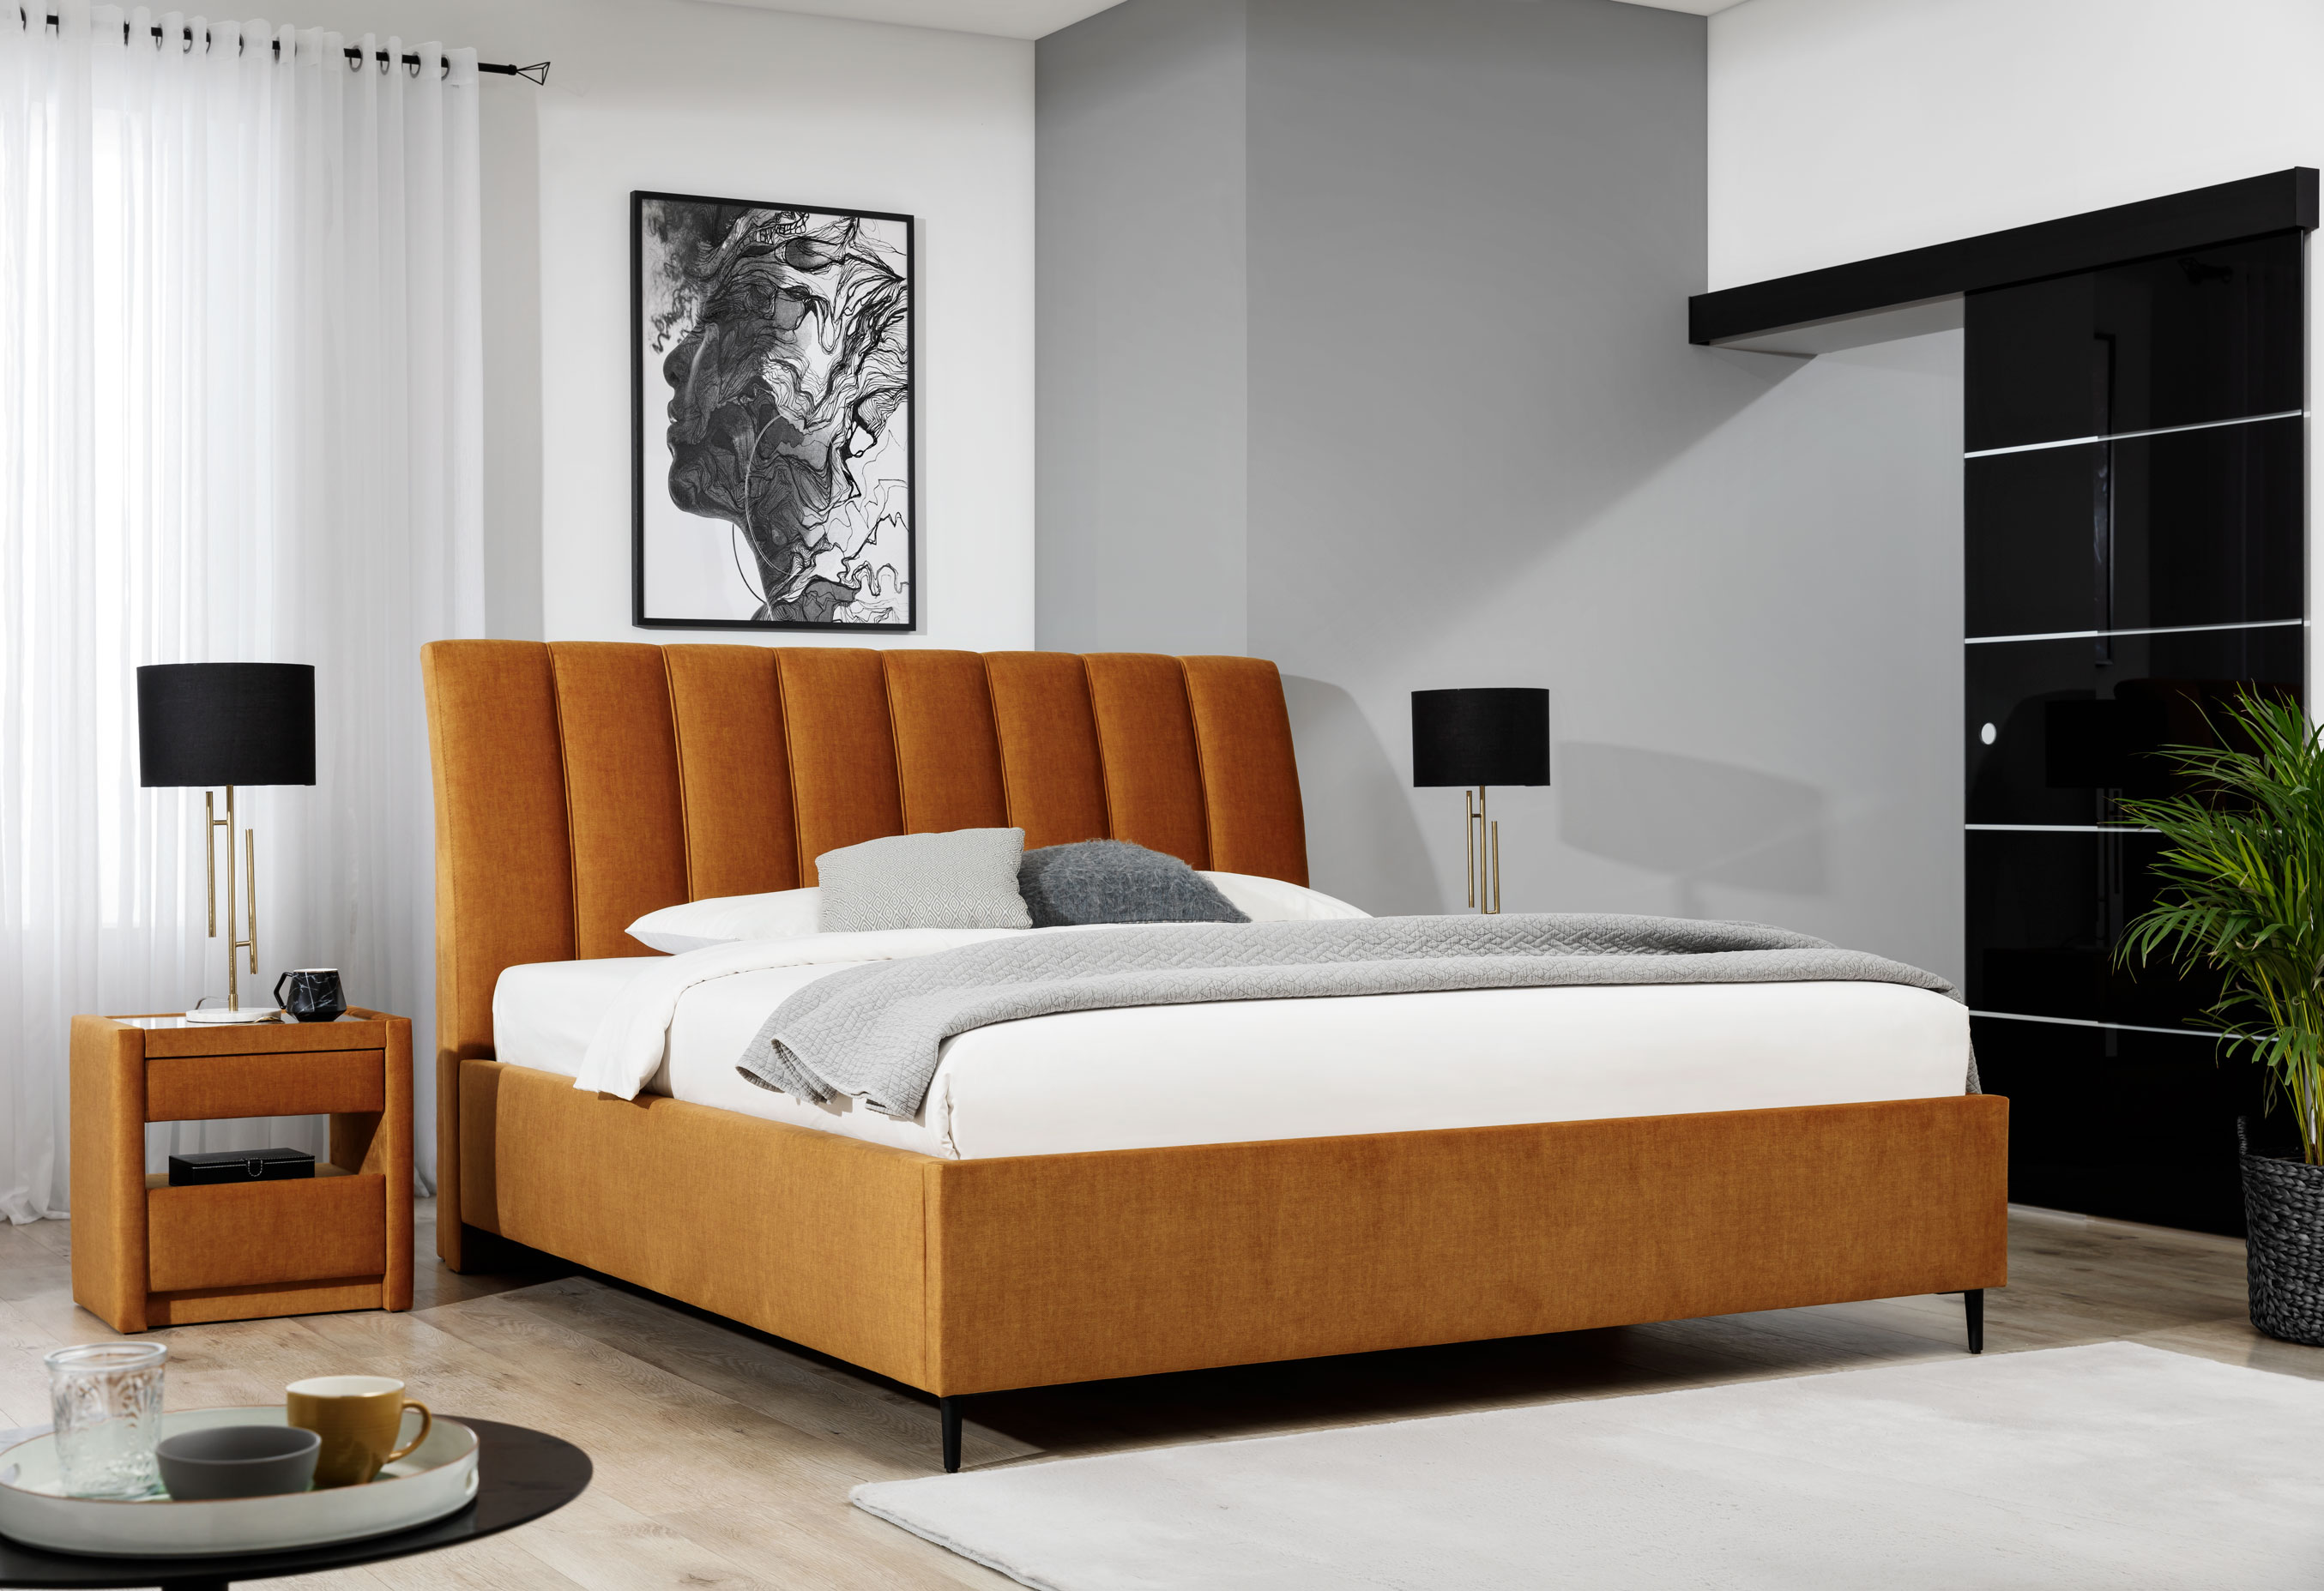 Polecamy łóżka tapicerowane i łóżka drewniane w szerokiej gamie kolorystycznej.